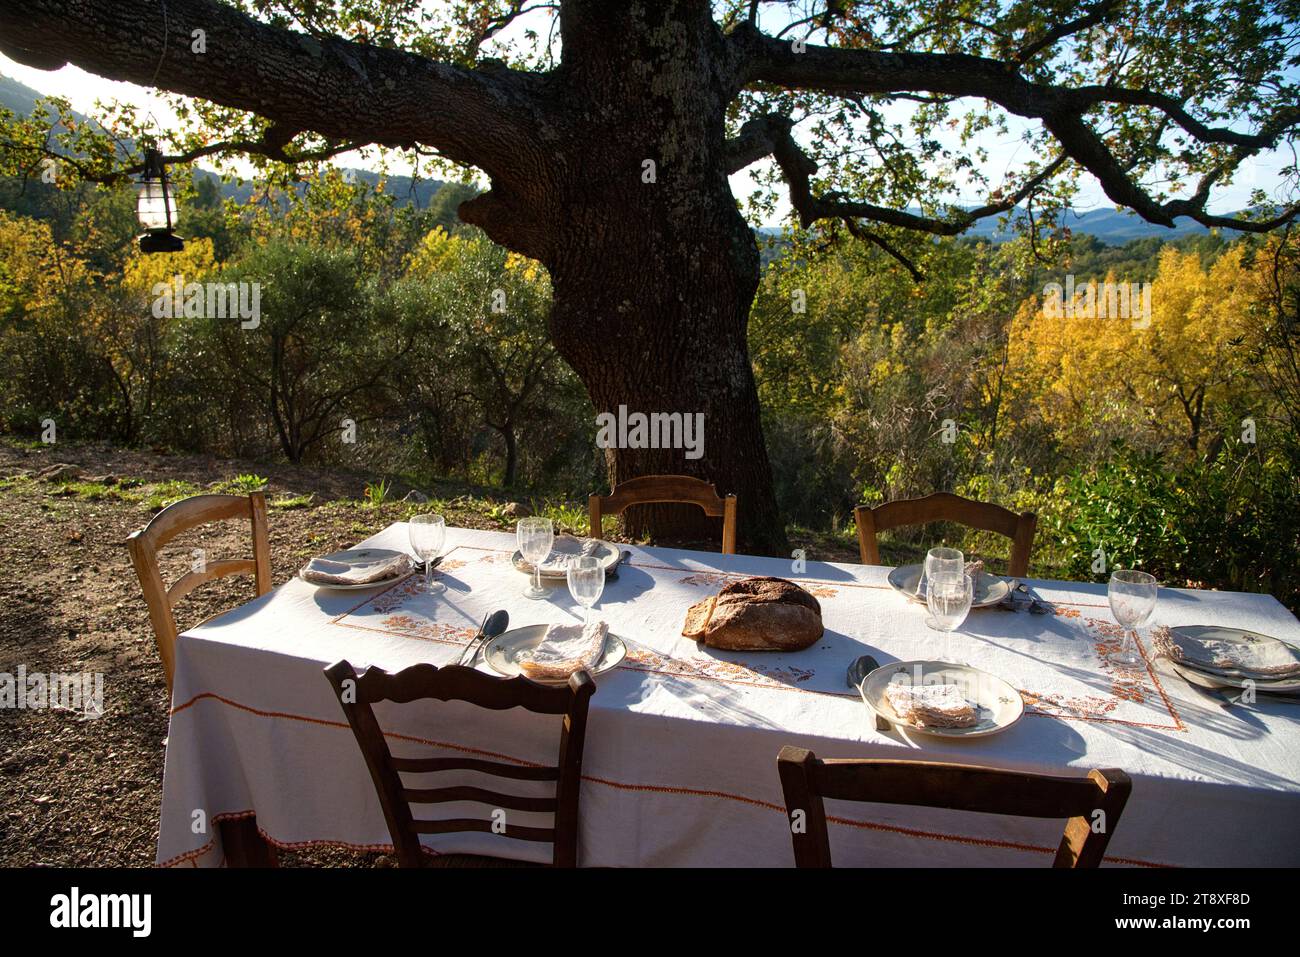 une table à manger habillée, avec assiettes, couverts verres et miche de pain, sur une terrasse à l'heure du souper, avec en arrière plan les collines Banque D'Images